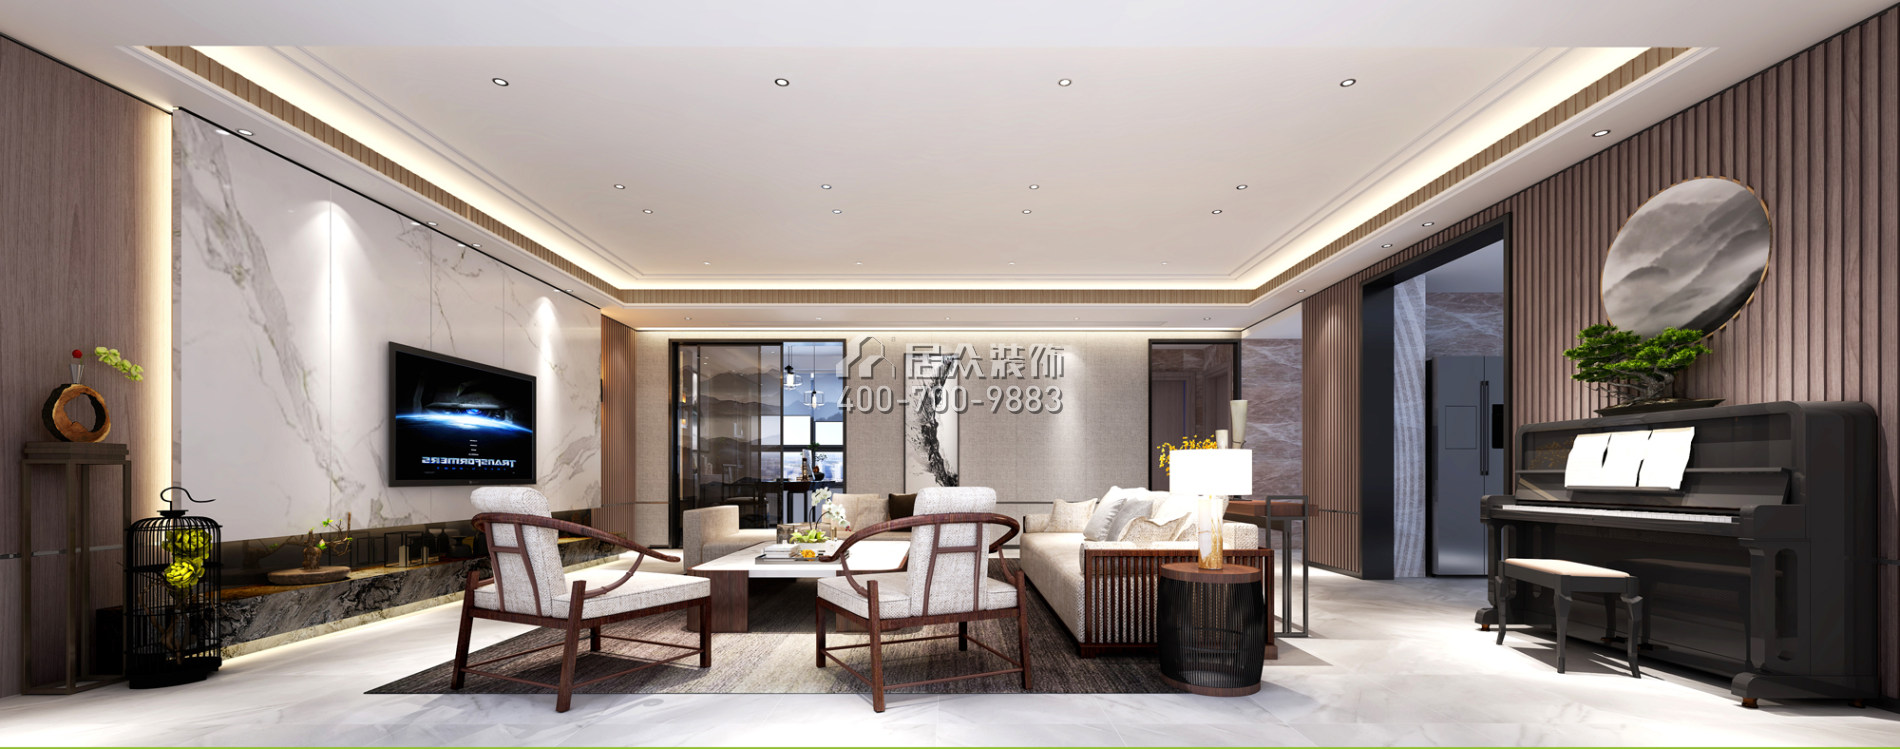 壹方商业中心二期342平方米中式风格平层户型客厅kok电竞平台效果图